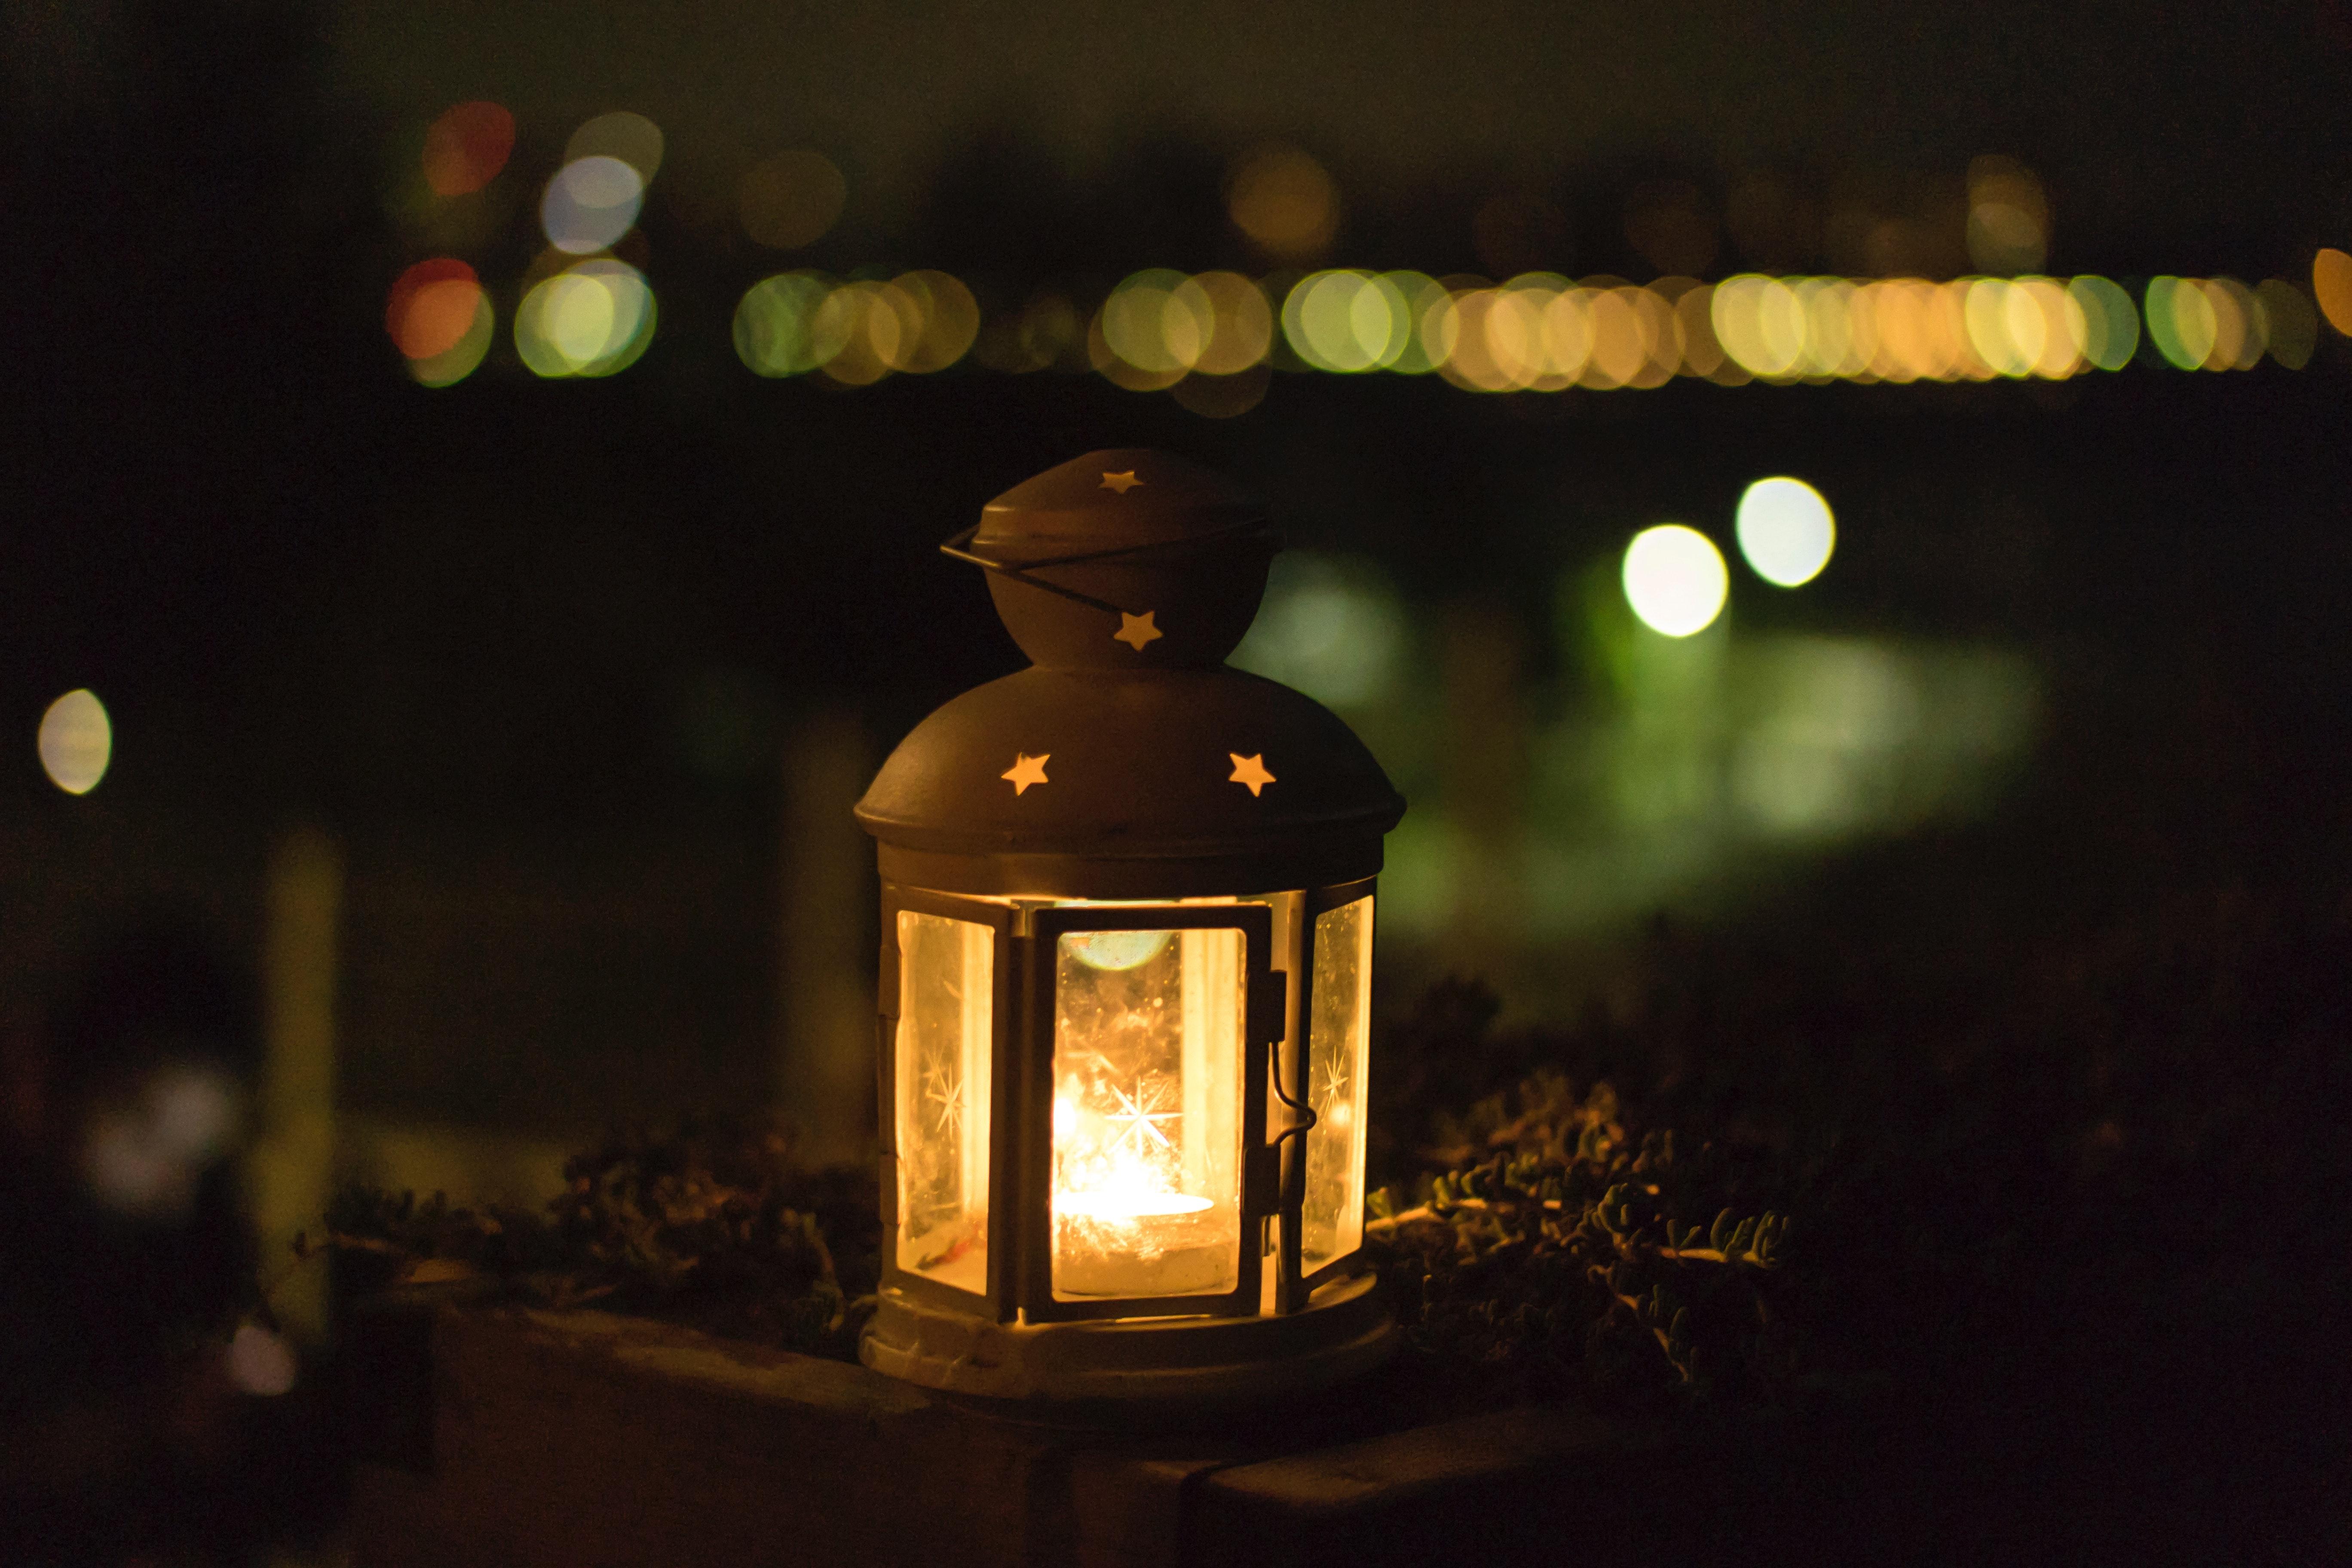 Yellow Lantern during Night · Free